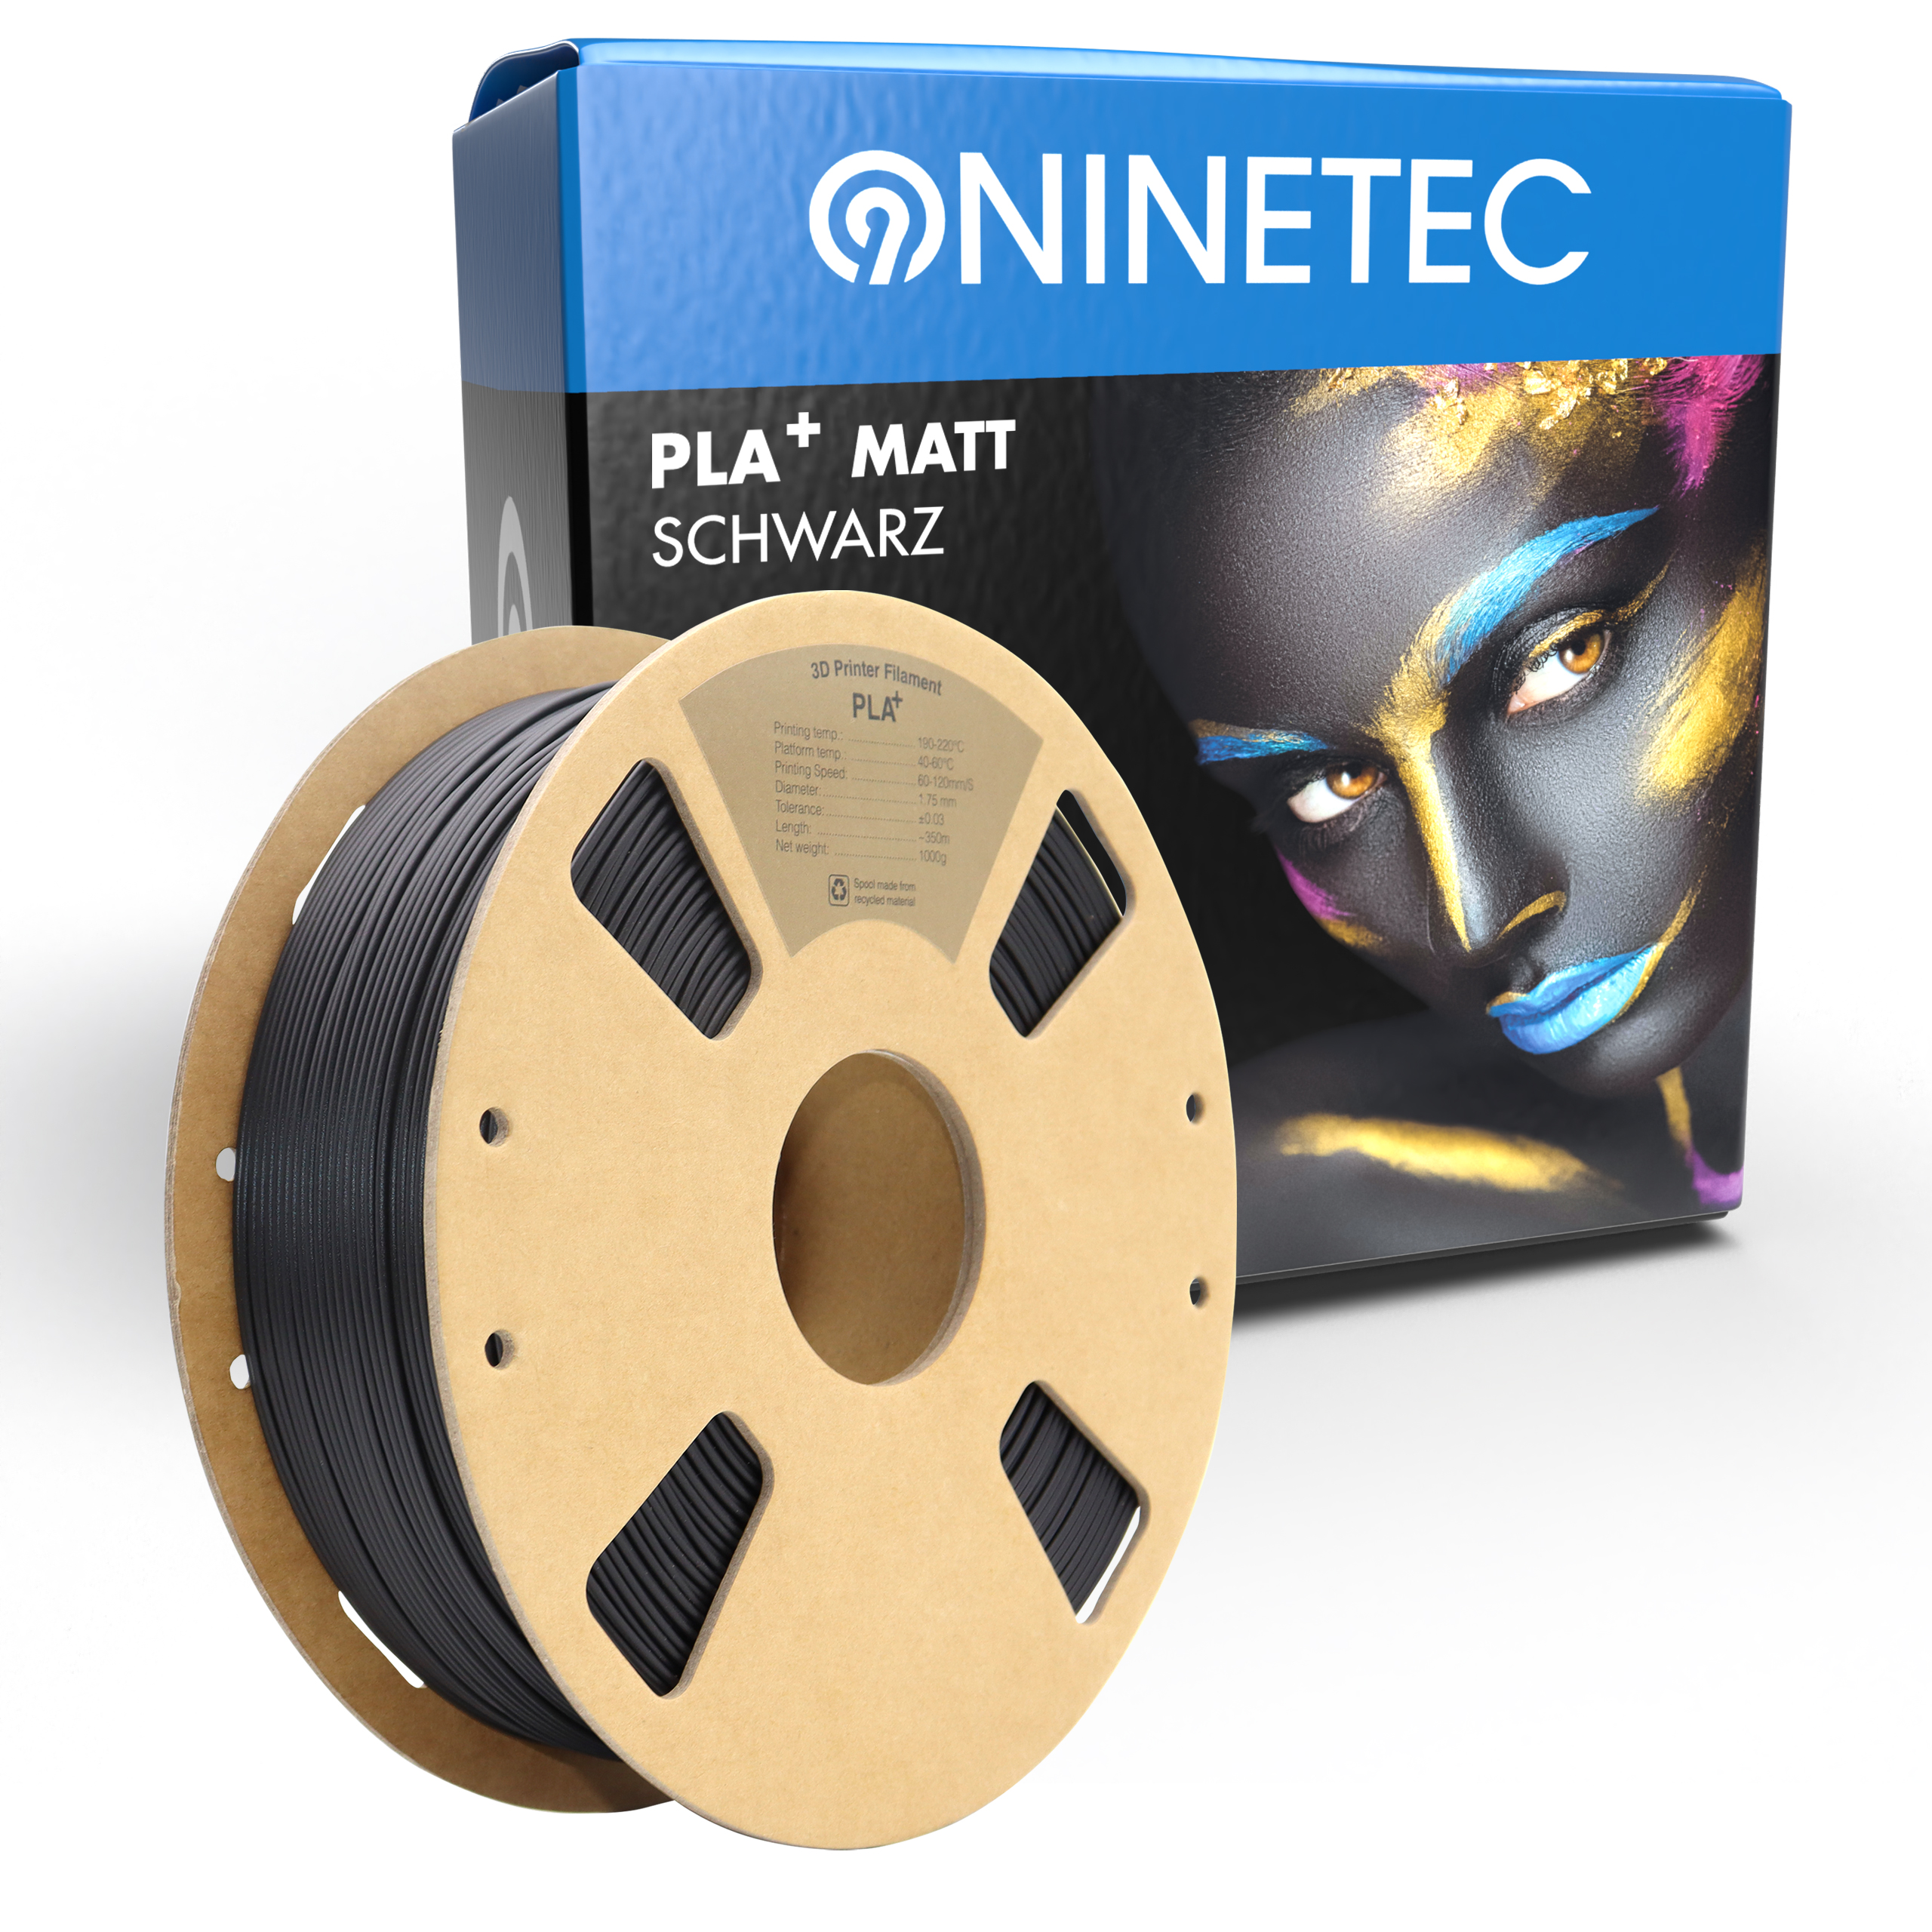 NINETEC PLA+ Matt Schwarz Filament